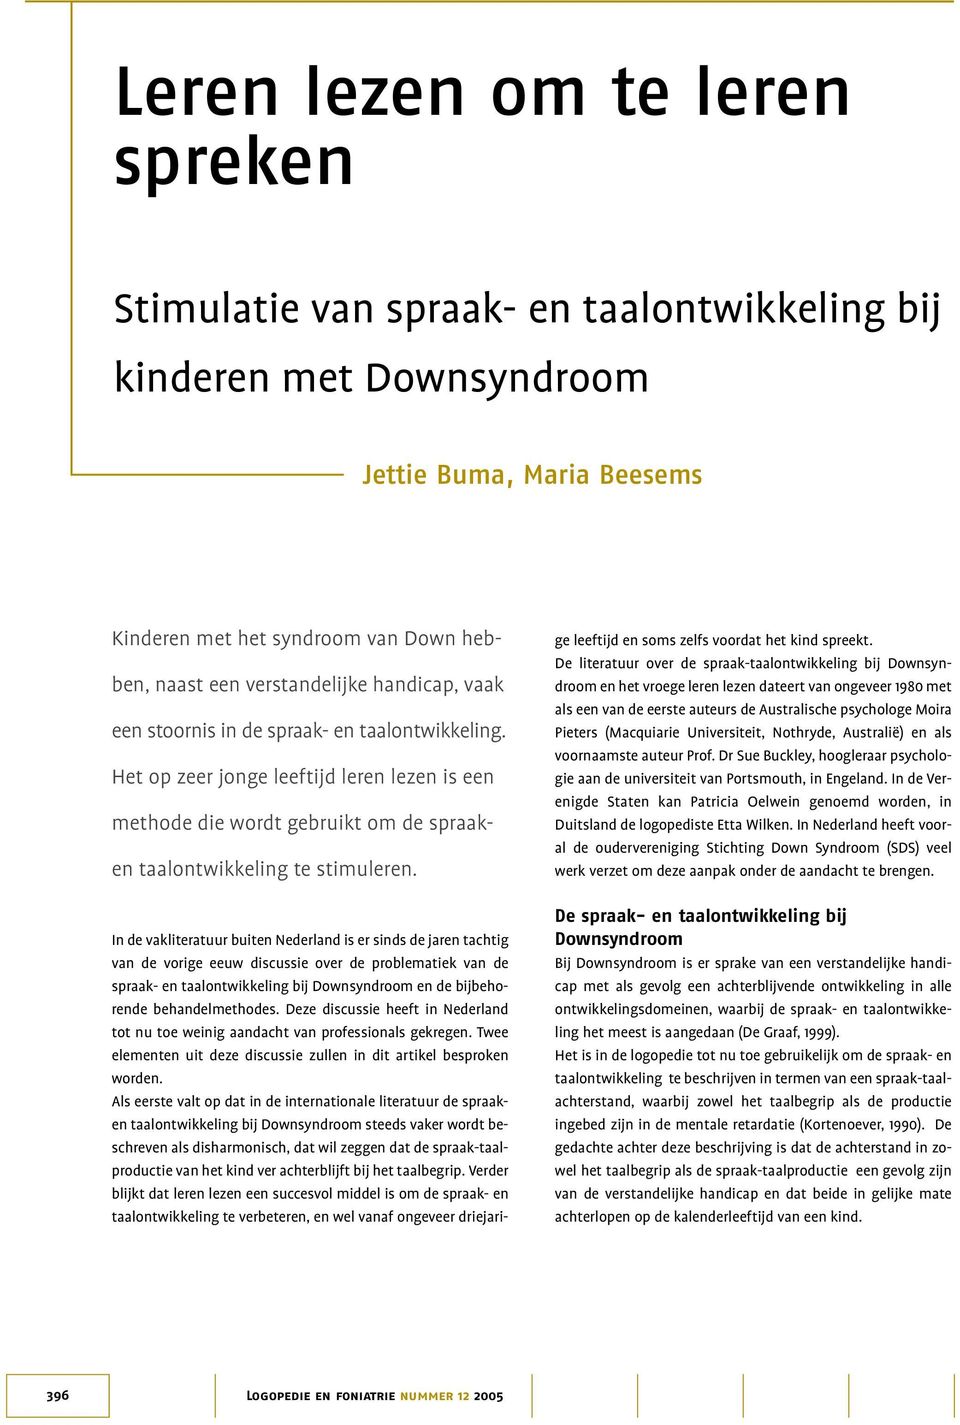 In de vakliteratuur buiten Nederland is er sinds de jaren tachtig van de vorige eeuw discussie over de problematiek van de spraak- en taalontwikkeling bij Downsyndroom en de bijbehorende